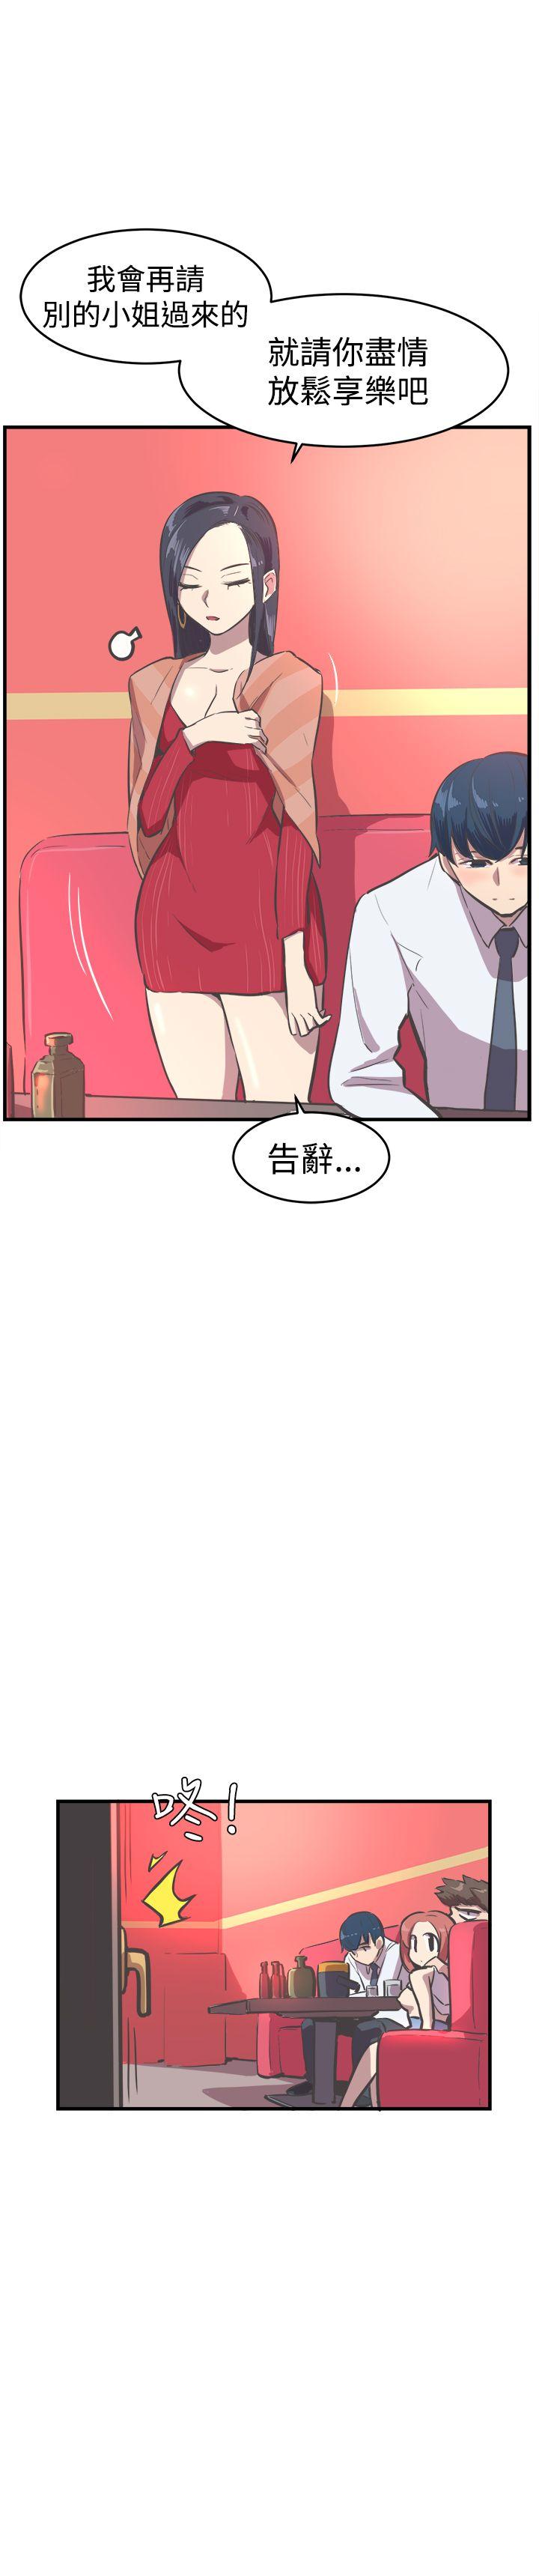 青春男女(完结)  第15话 漫画图片18.jpg